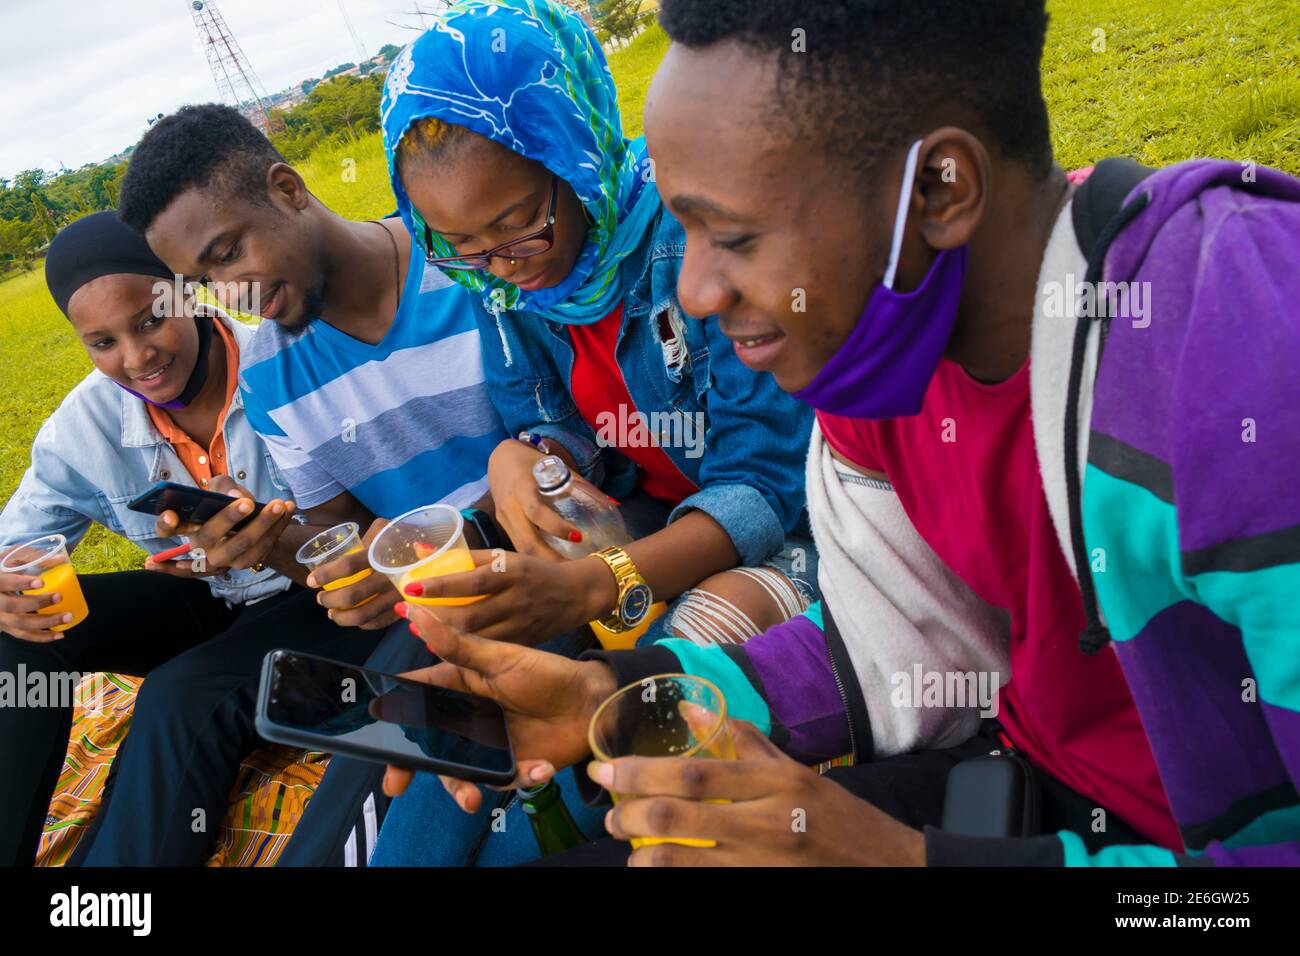 jeunes gens noirs assis dans un parc, buvant de leurs tasses en verre et utilisant un smartphone Banque D'Images